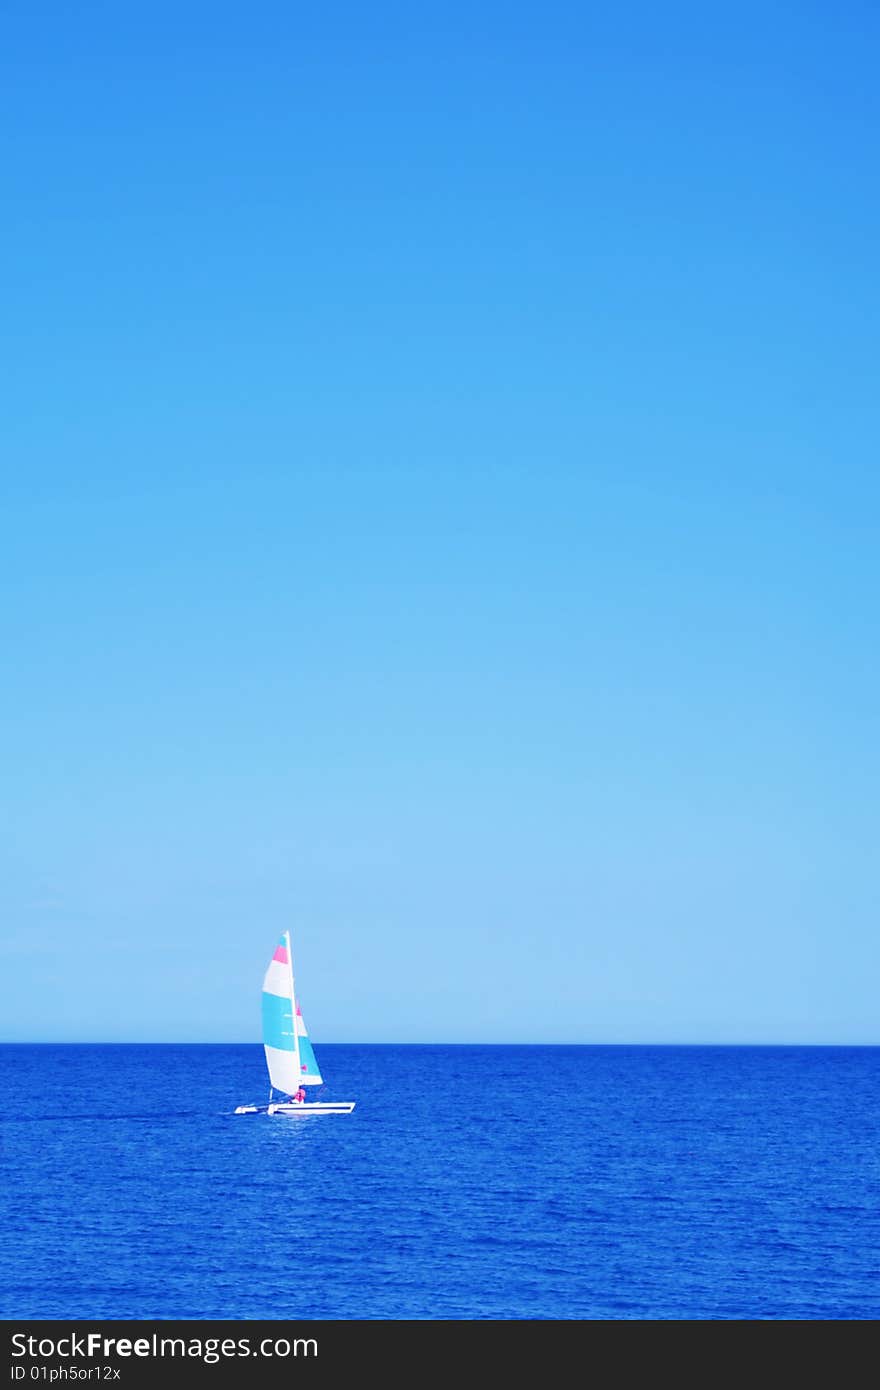 Sailboat at an open sea. Sailboat at an open sea.